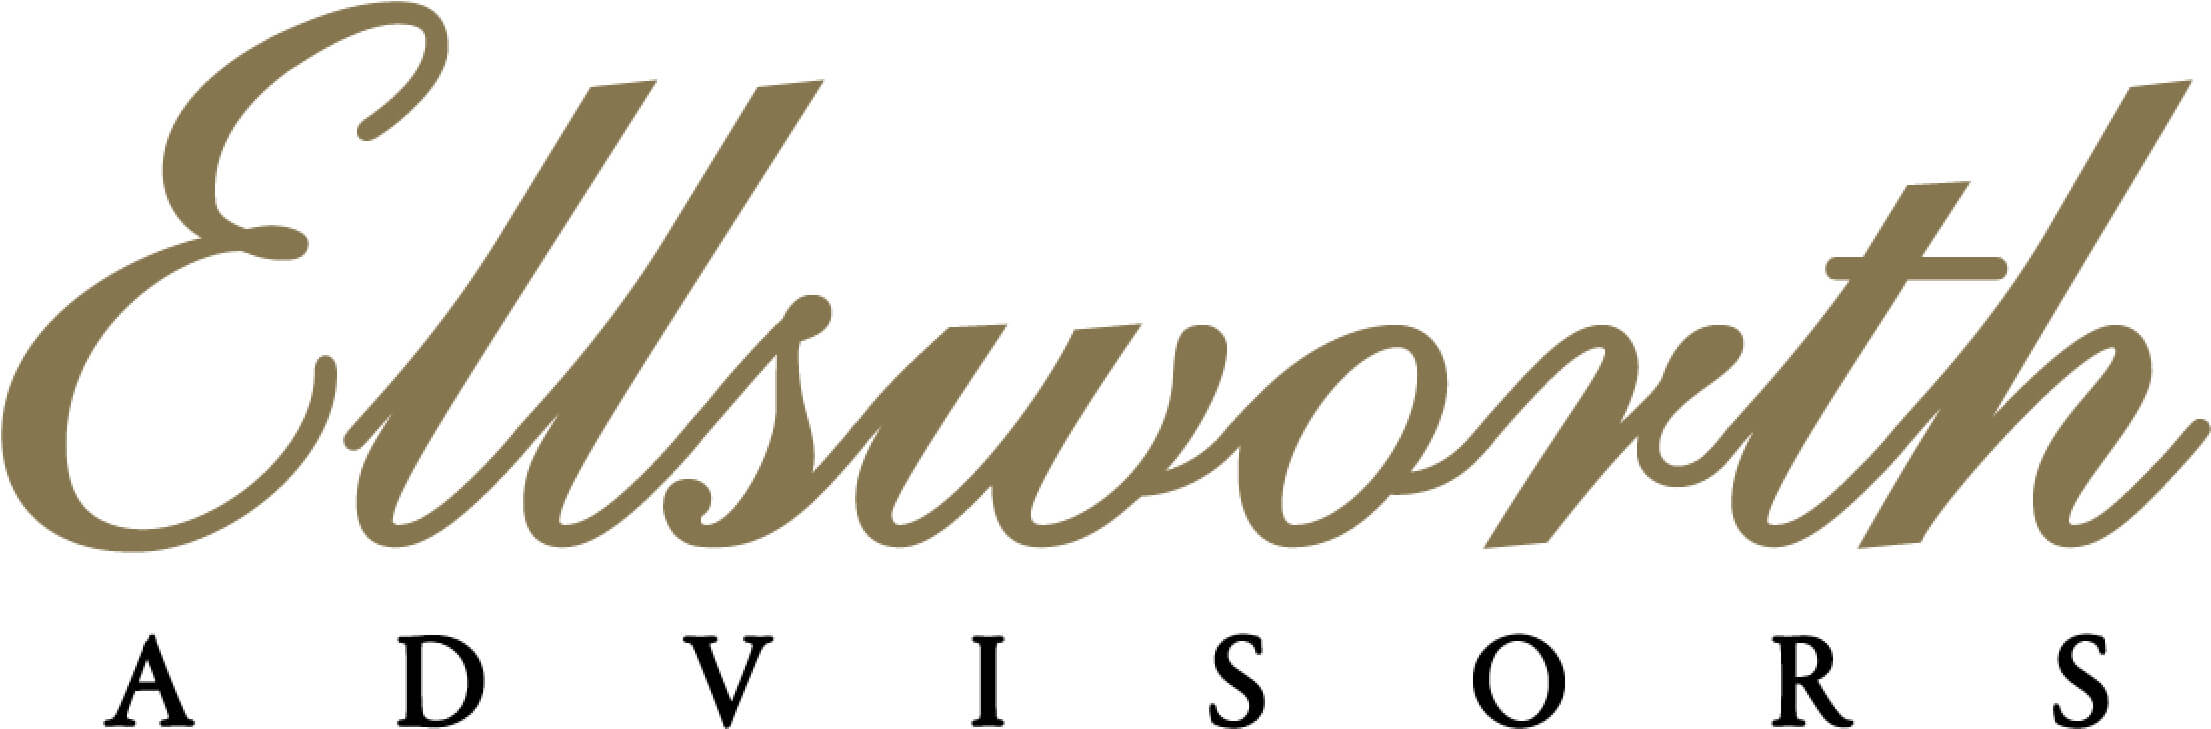 Ellsworth Advisors_logo_gold-blk_4c (2)